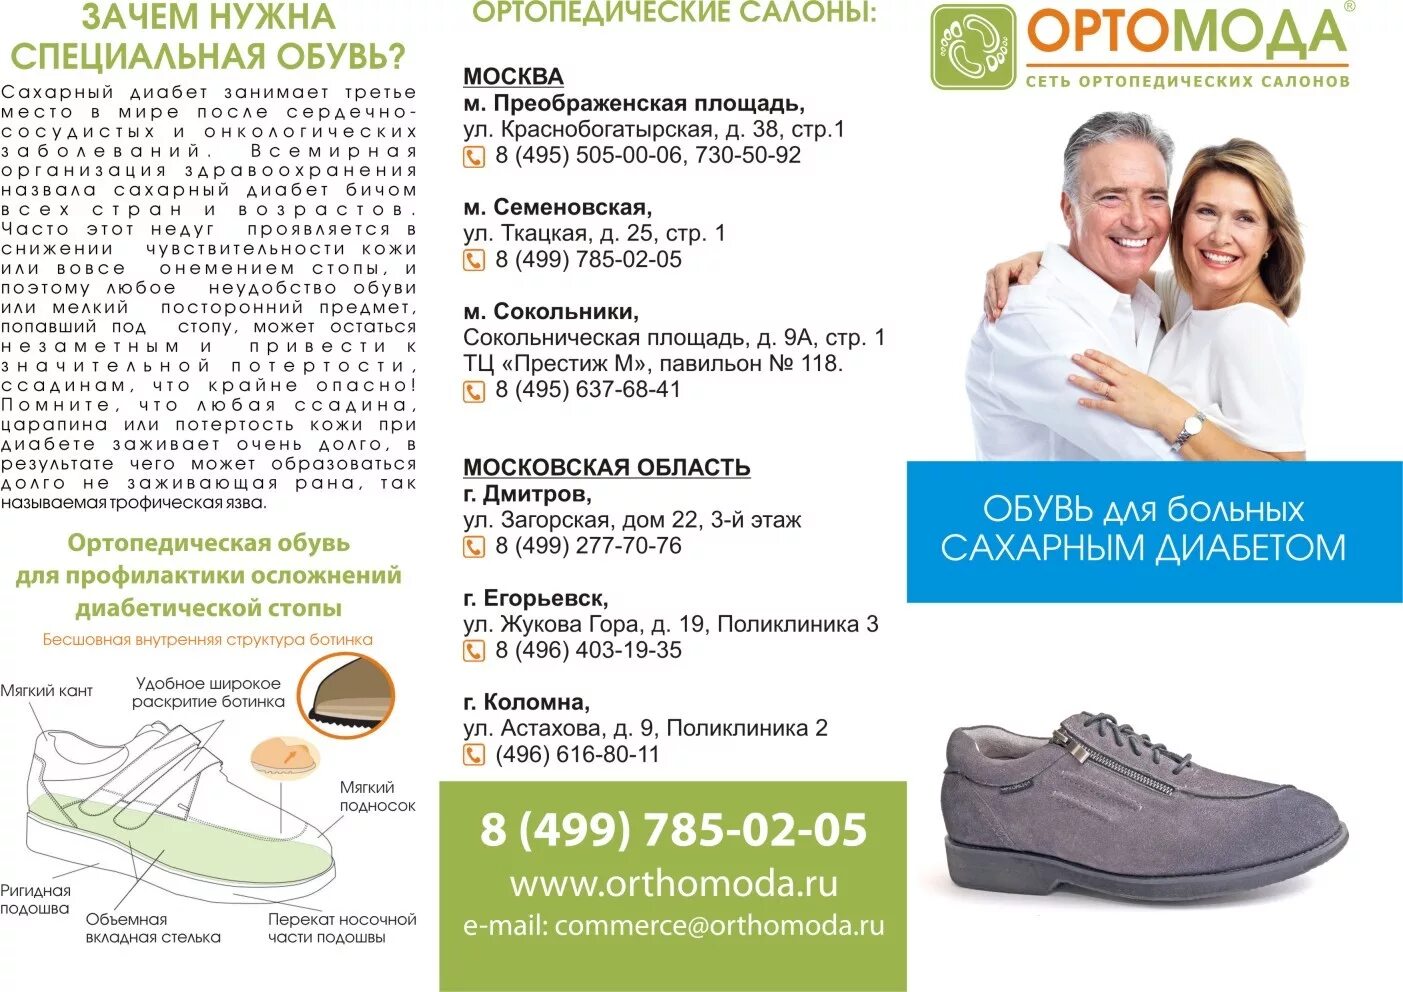 Купить ортопедическую обувь по сертификату. Ортопедическая обувь для пациентов с сахарным диабетом урок 28. Ортопедическая обувь профилактика. Обувь ортопедические предприятие. Салон ортопедической обуви.